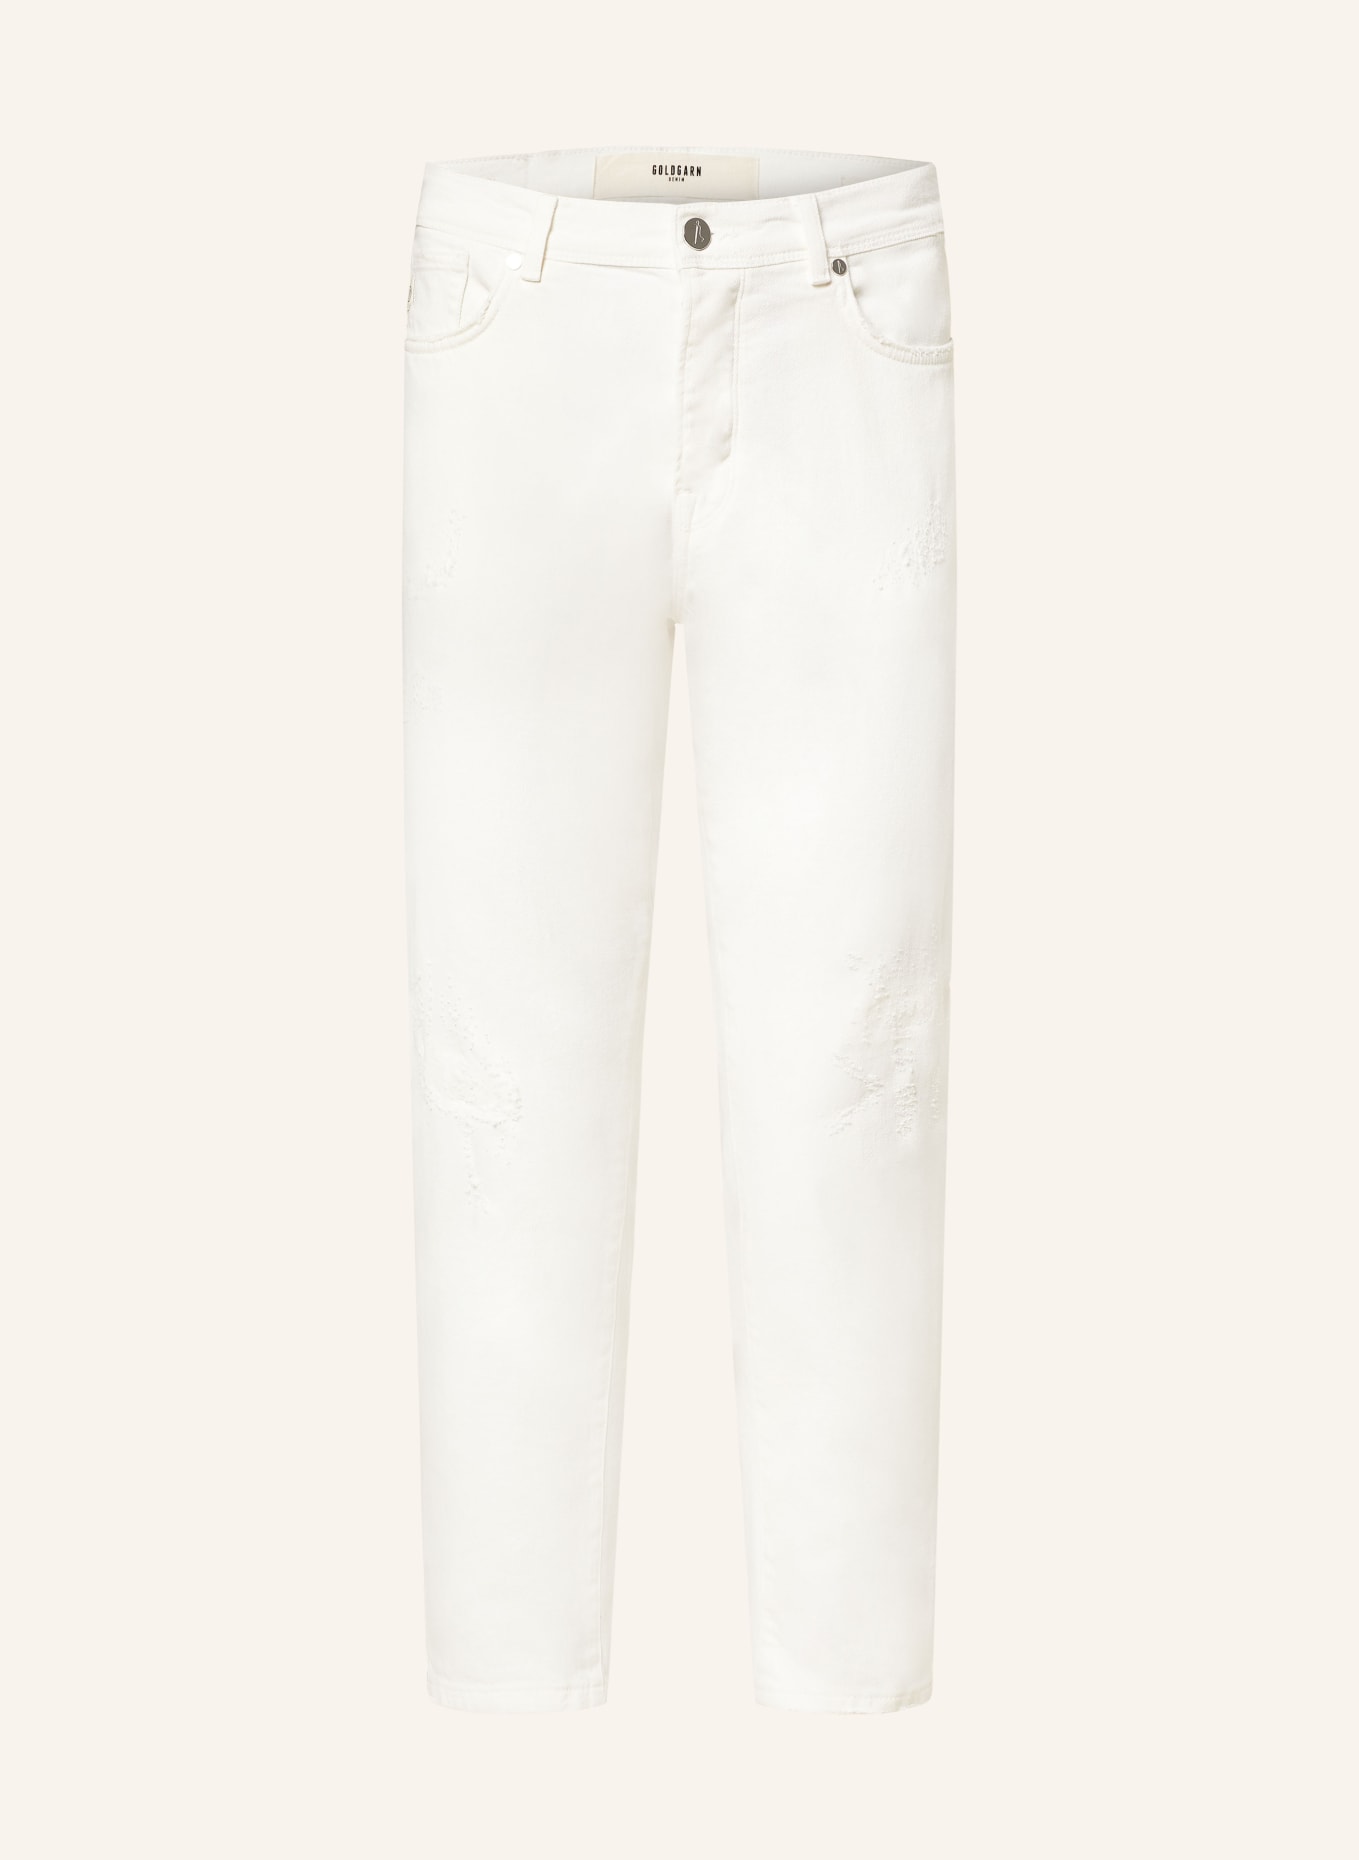 GOLDGARN DENIM Destroyed Jeans RHEINAU Tapered Fit, Farbe: 1000 WHITE (Bild 1)